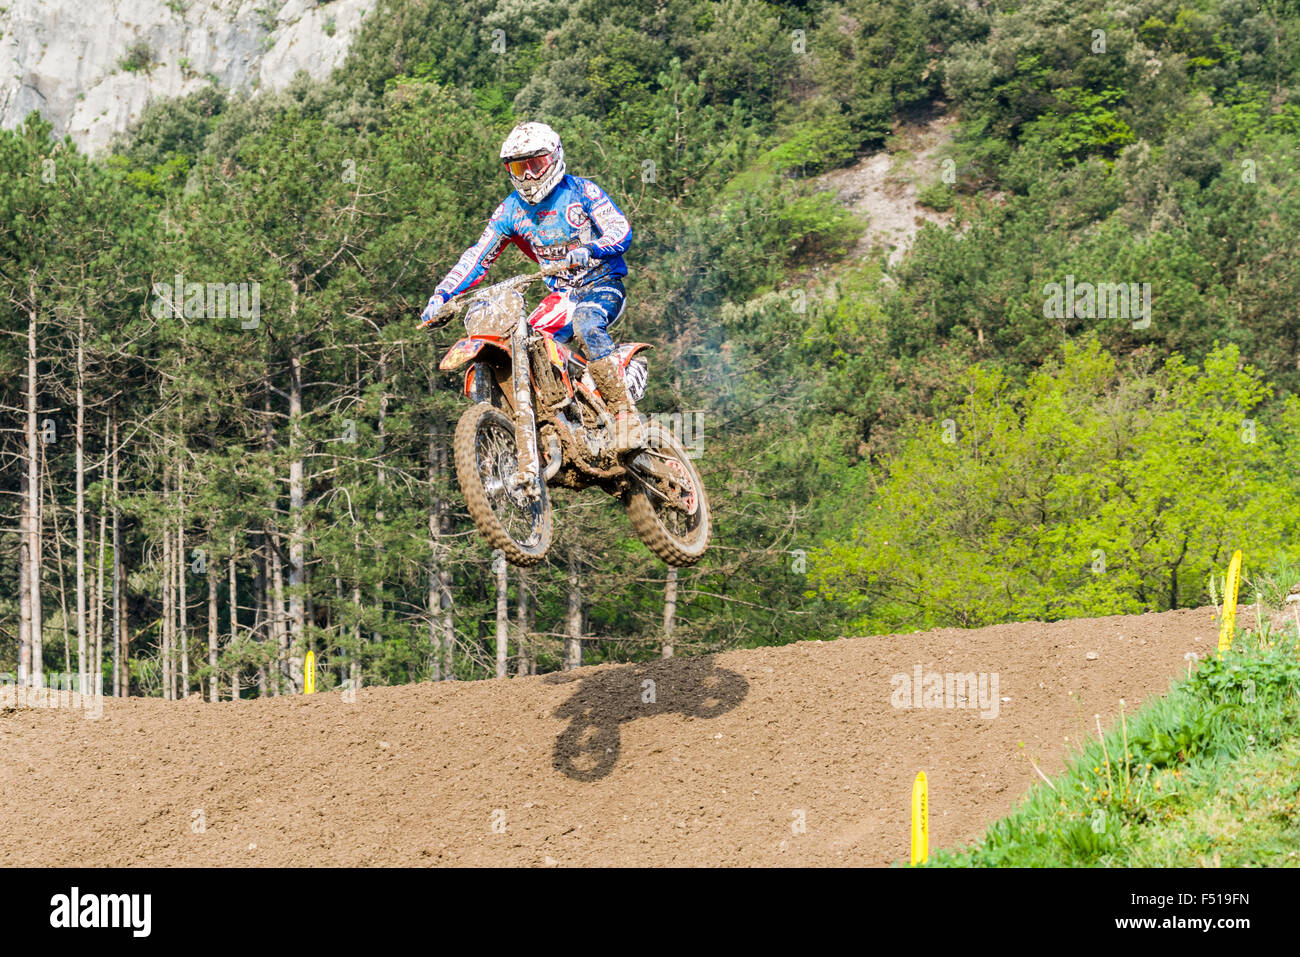 Un motocycliste sur un vélo motocross saute en l'air au cours de la formation pour la course championnat du monde mxgp Banque D'Images